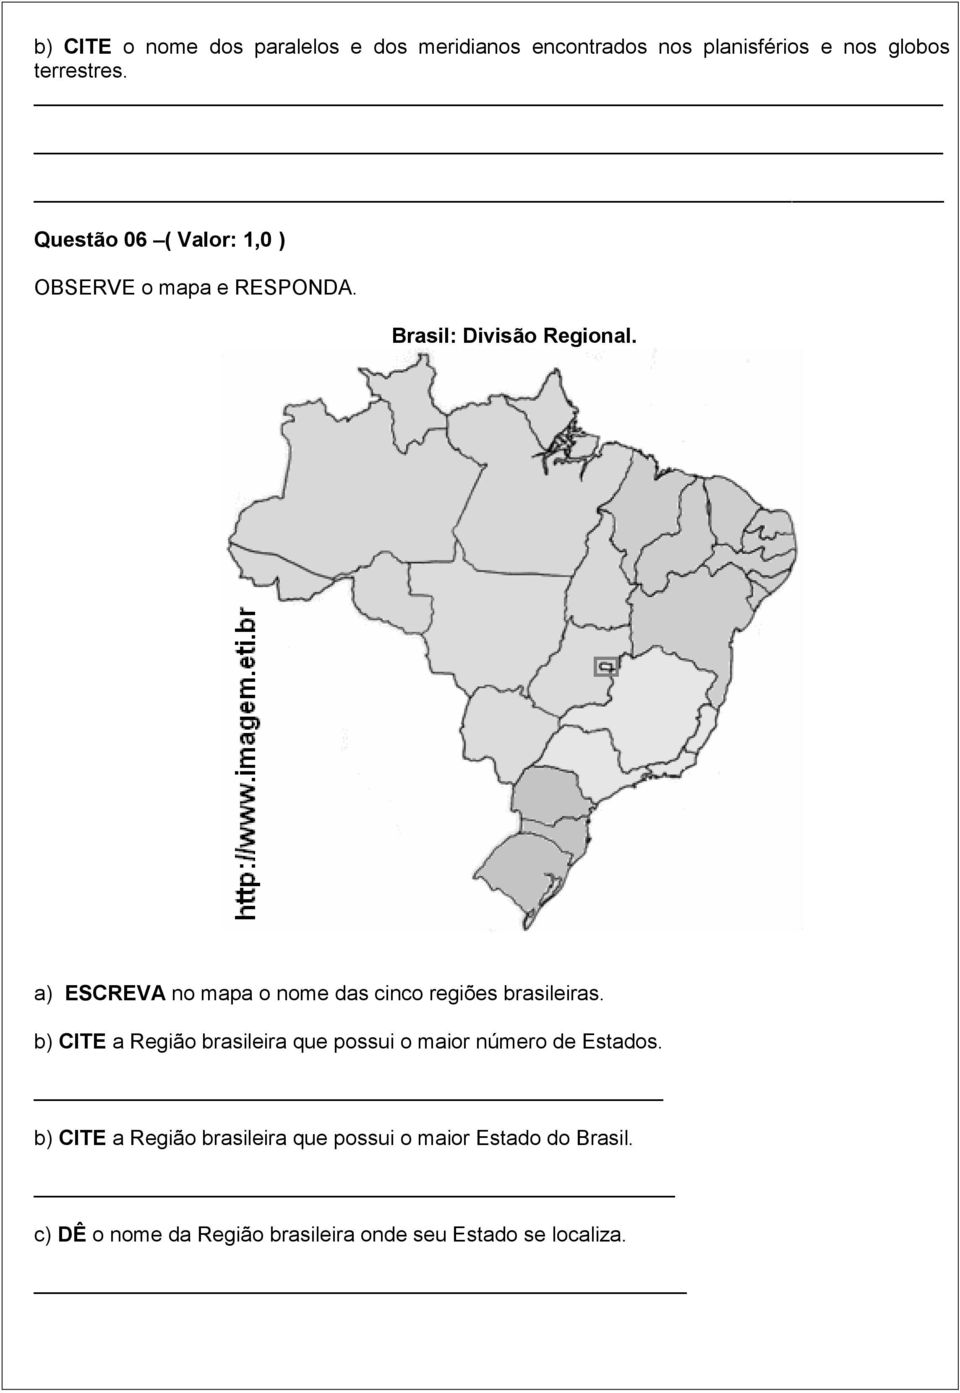 a) ESCREVA no mapa o nome das cinco regiões brasileiras.